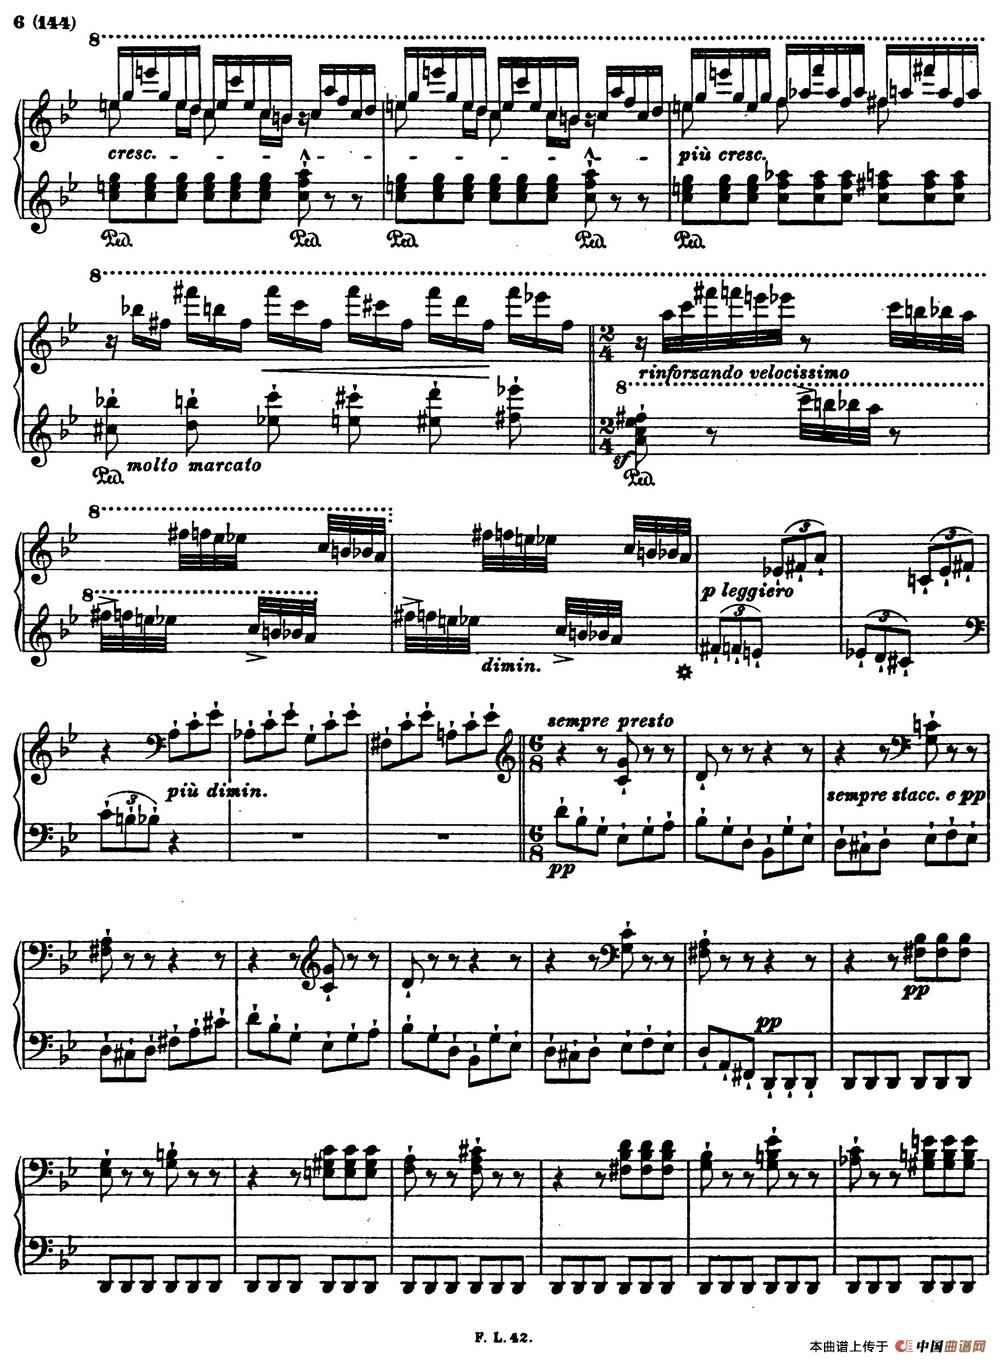 李斯特音乐会练习曲 S145（1 S145 森林的呼啸 Waldesrauschen）(1)_Etudes de Concert s145 Liszt_页面_05.jpg